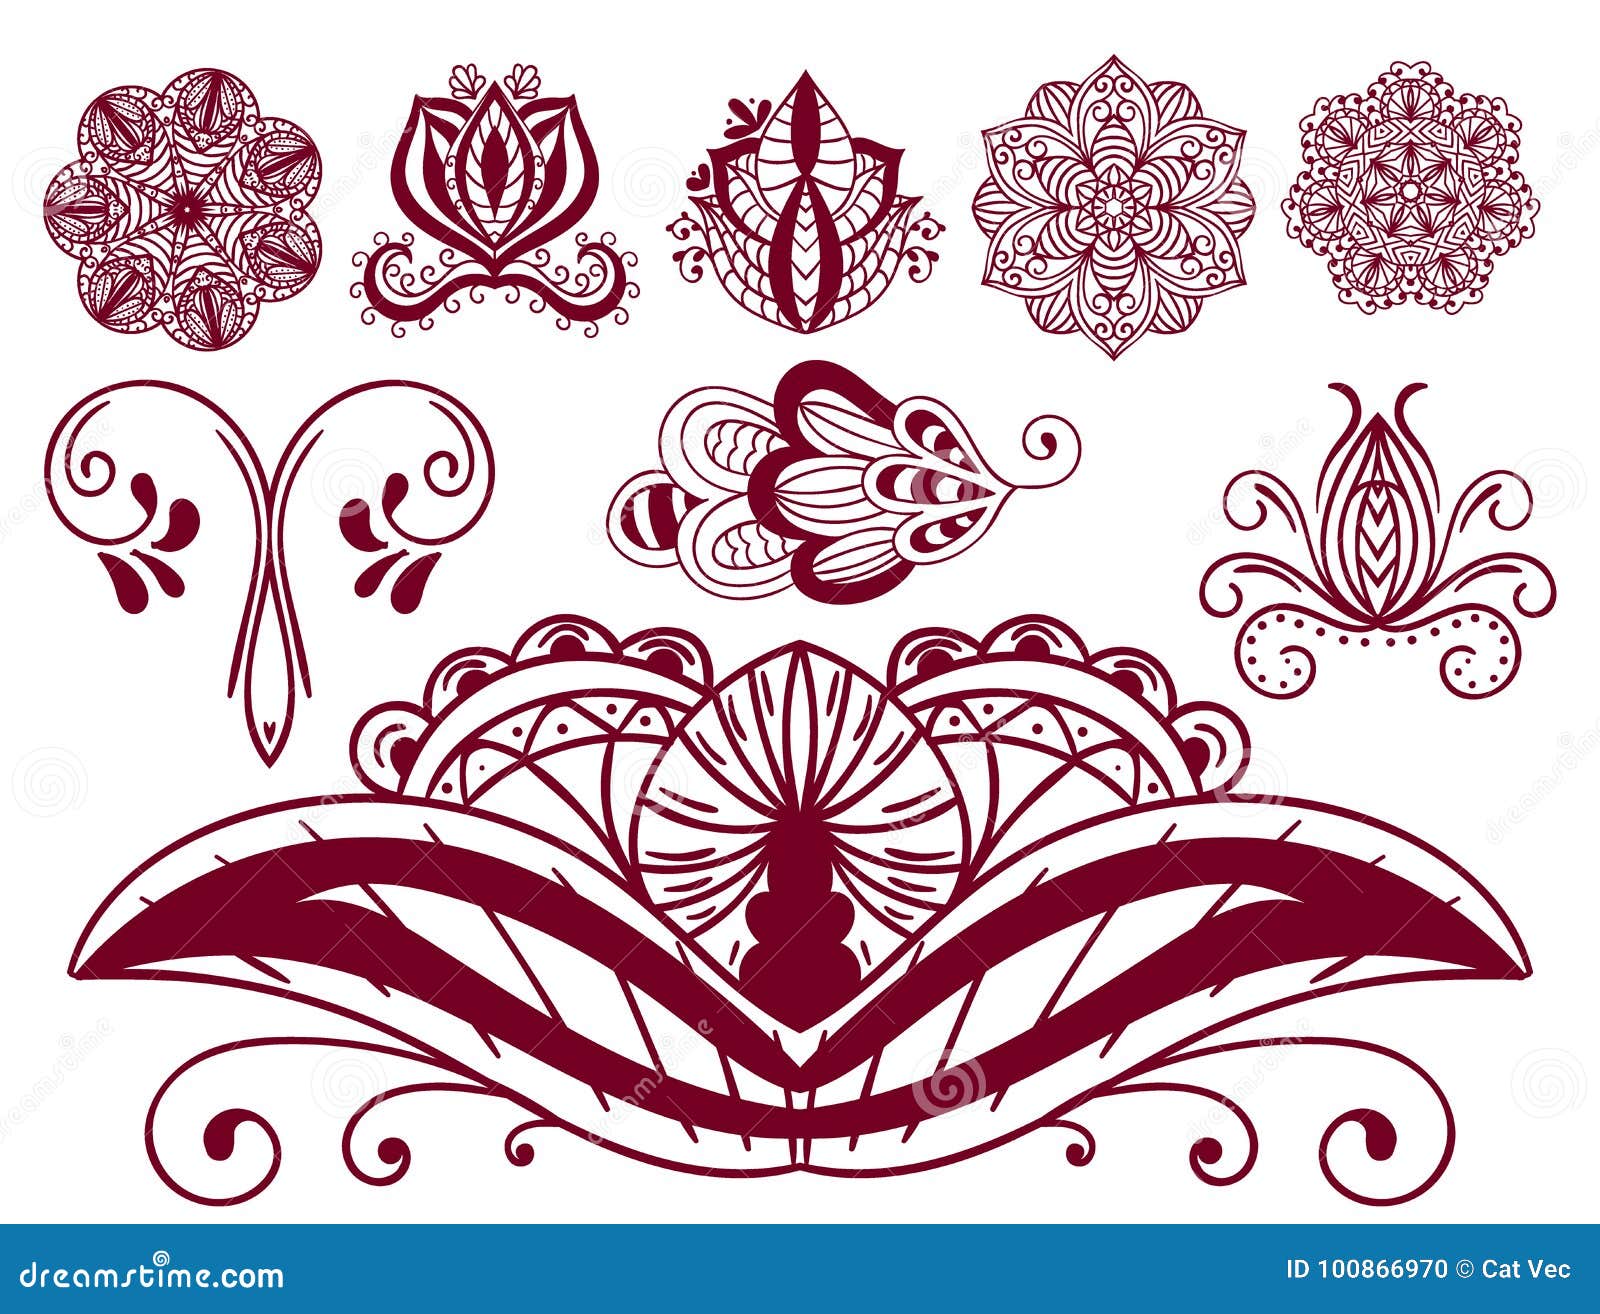 190 Clip Art Of Paisley Flower Tattoo Designs Illustrations RoyaltyFree  Vector Graphics  Clip Art  iStock